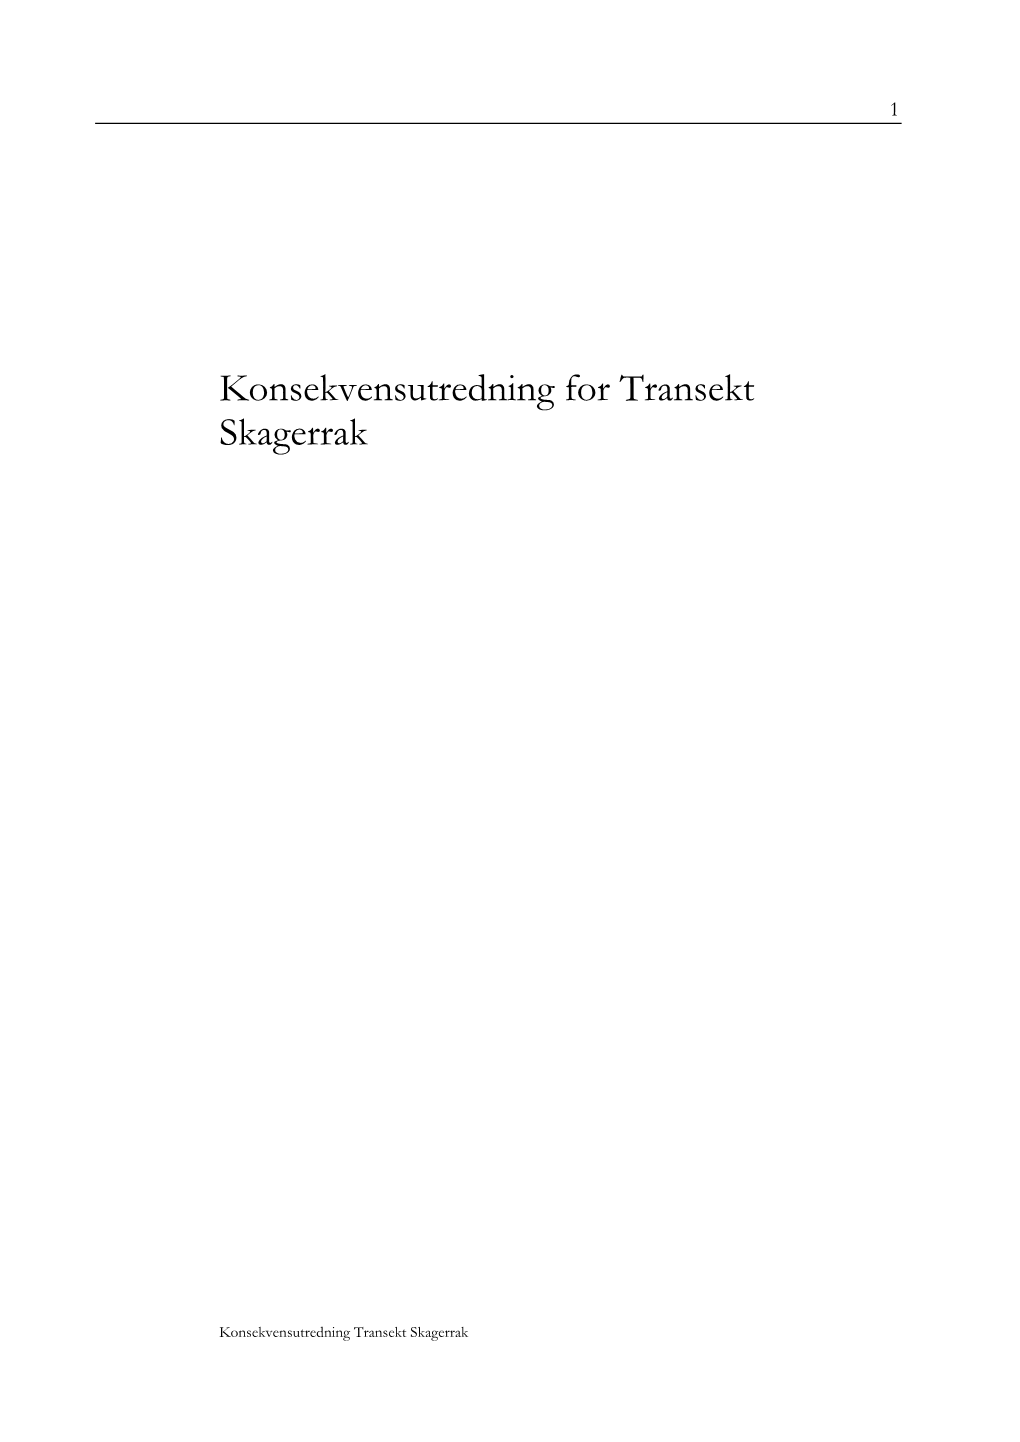 Konsekvensutredning for Transekt Skagerrak